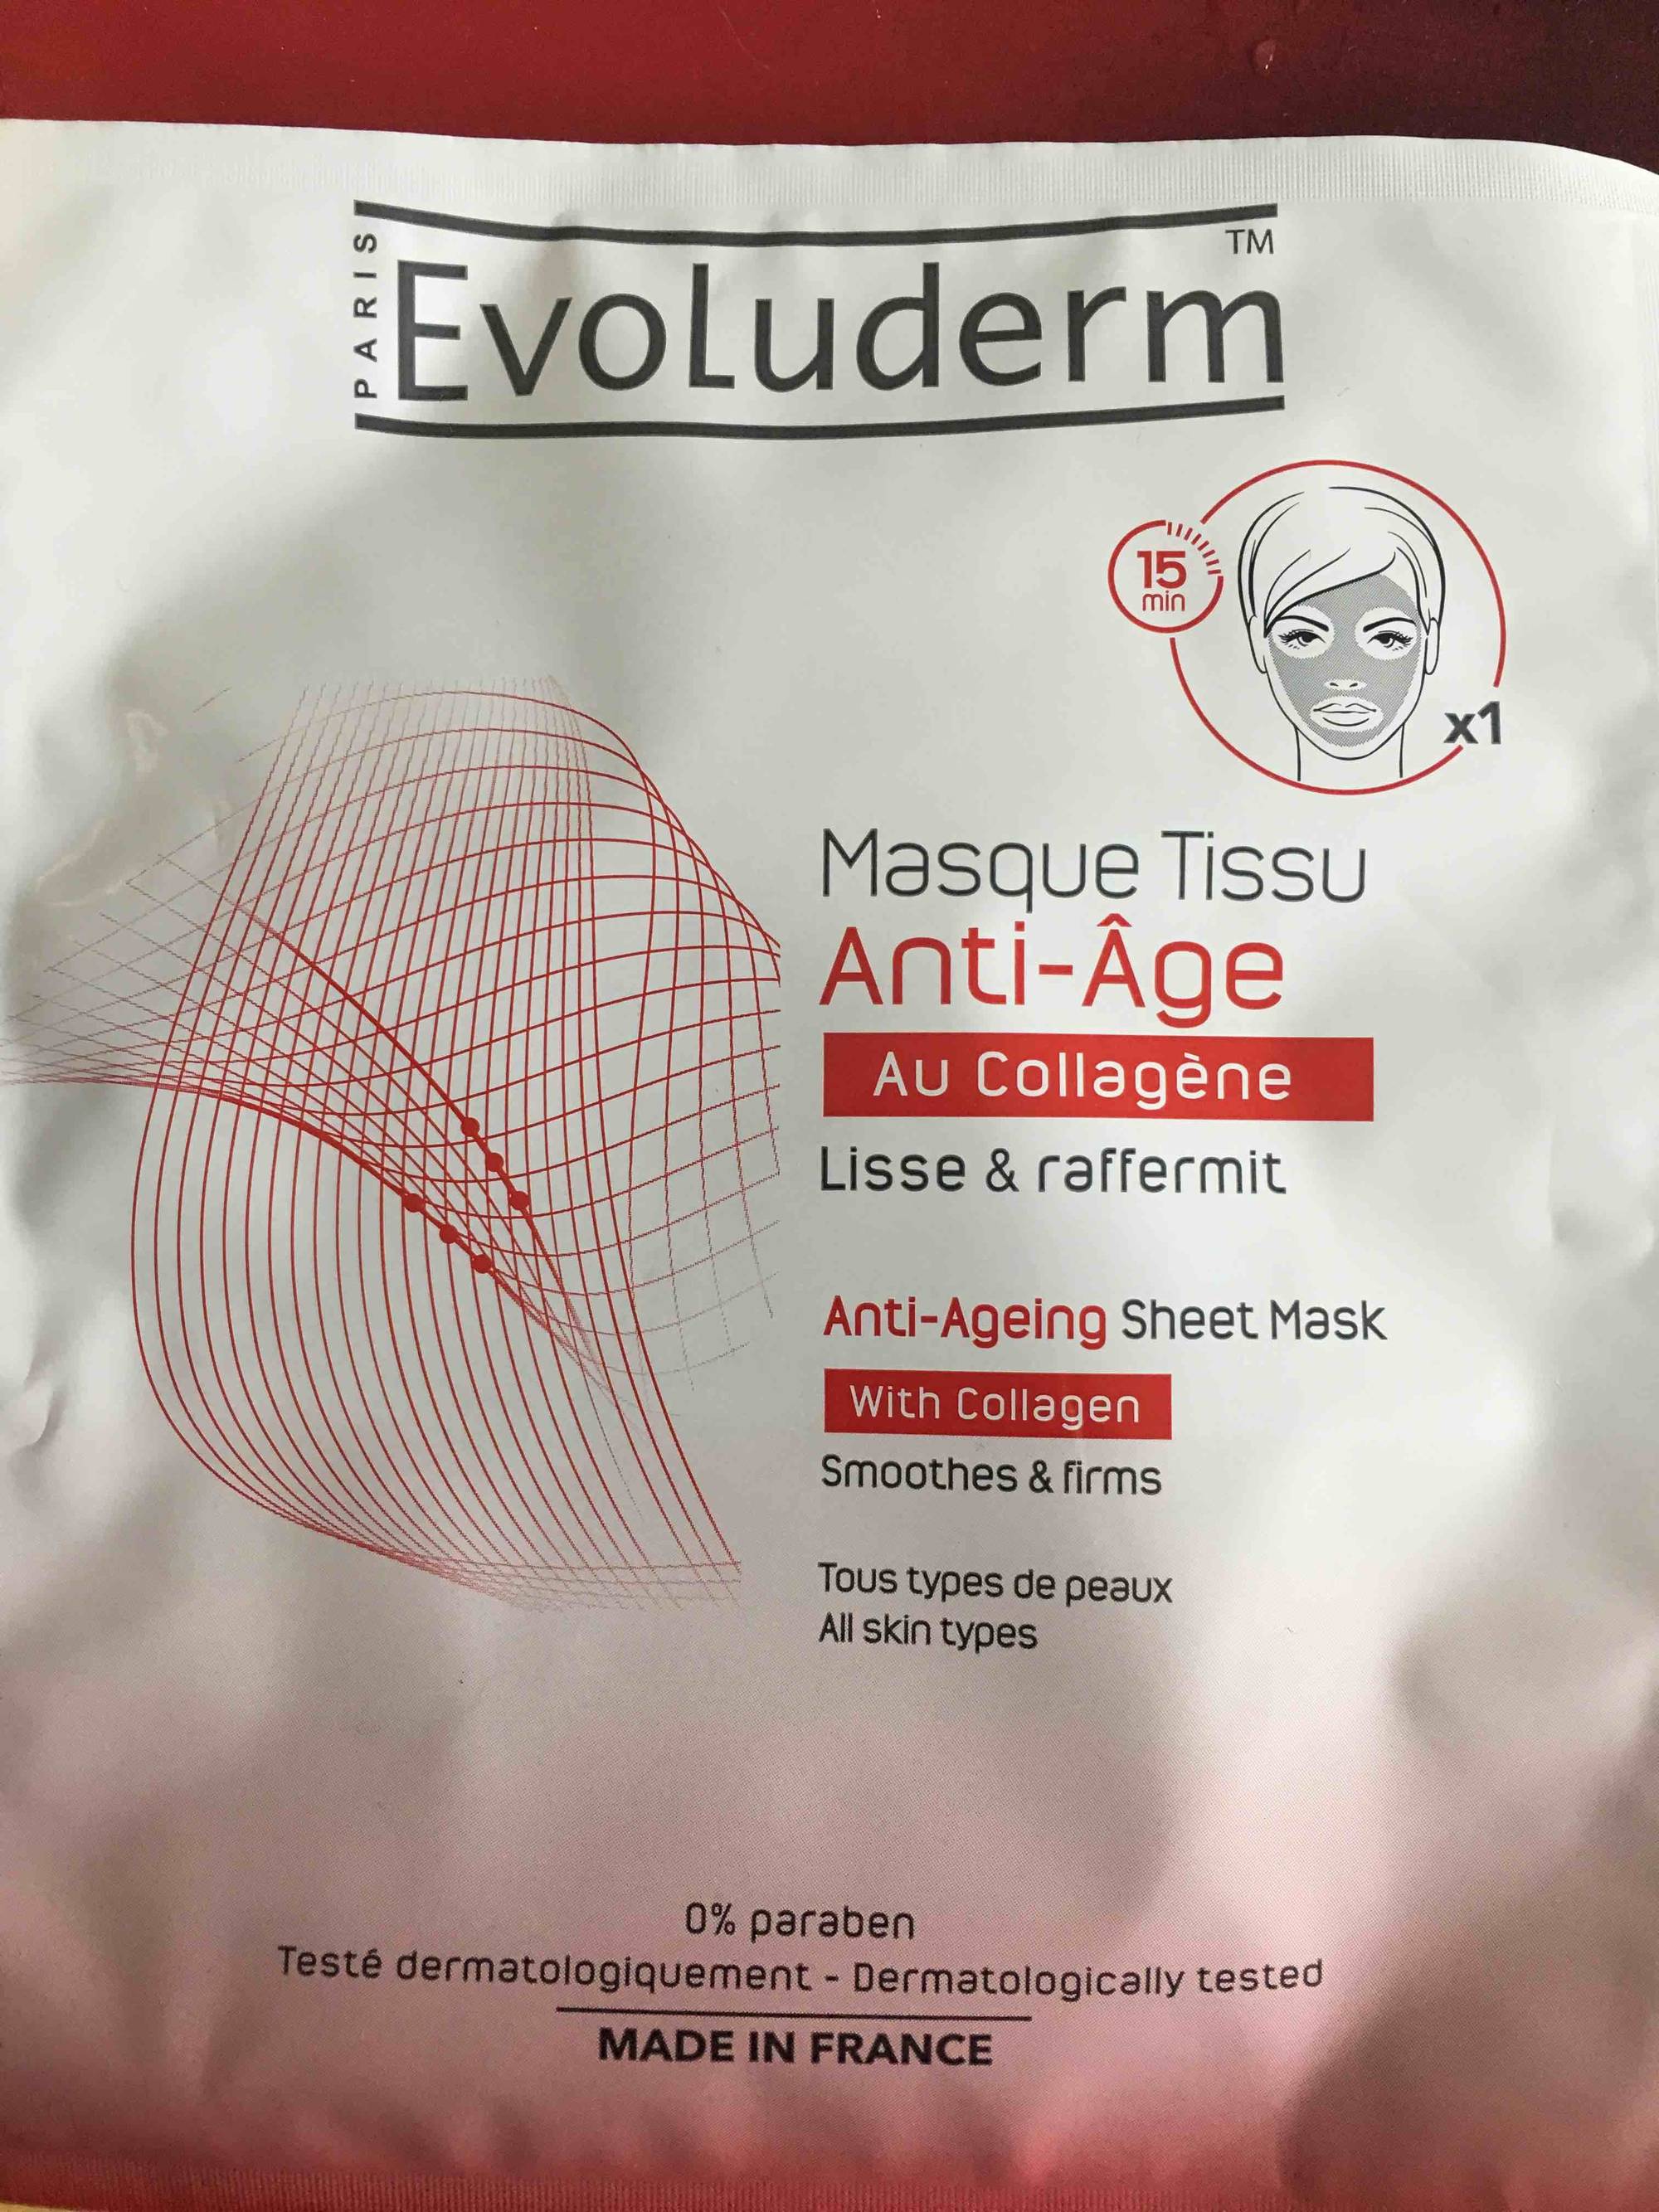 EVOLUDERM - Masque tissu anti-âge au collagène